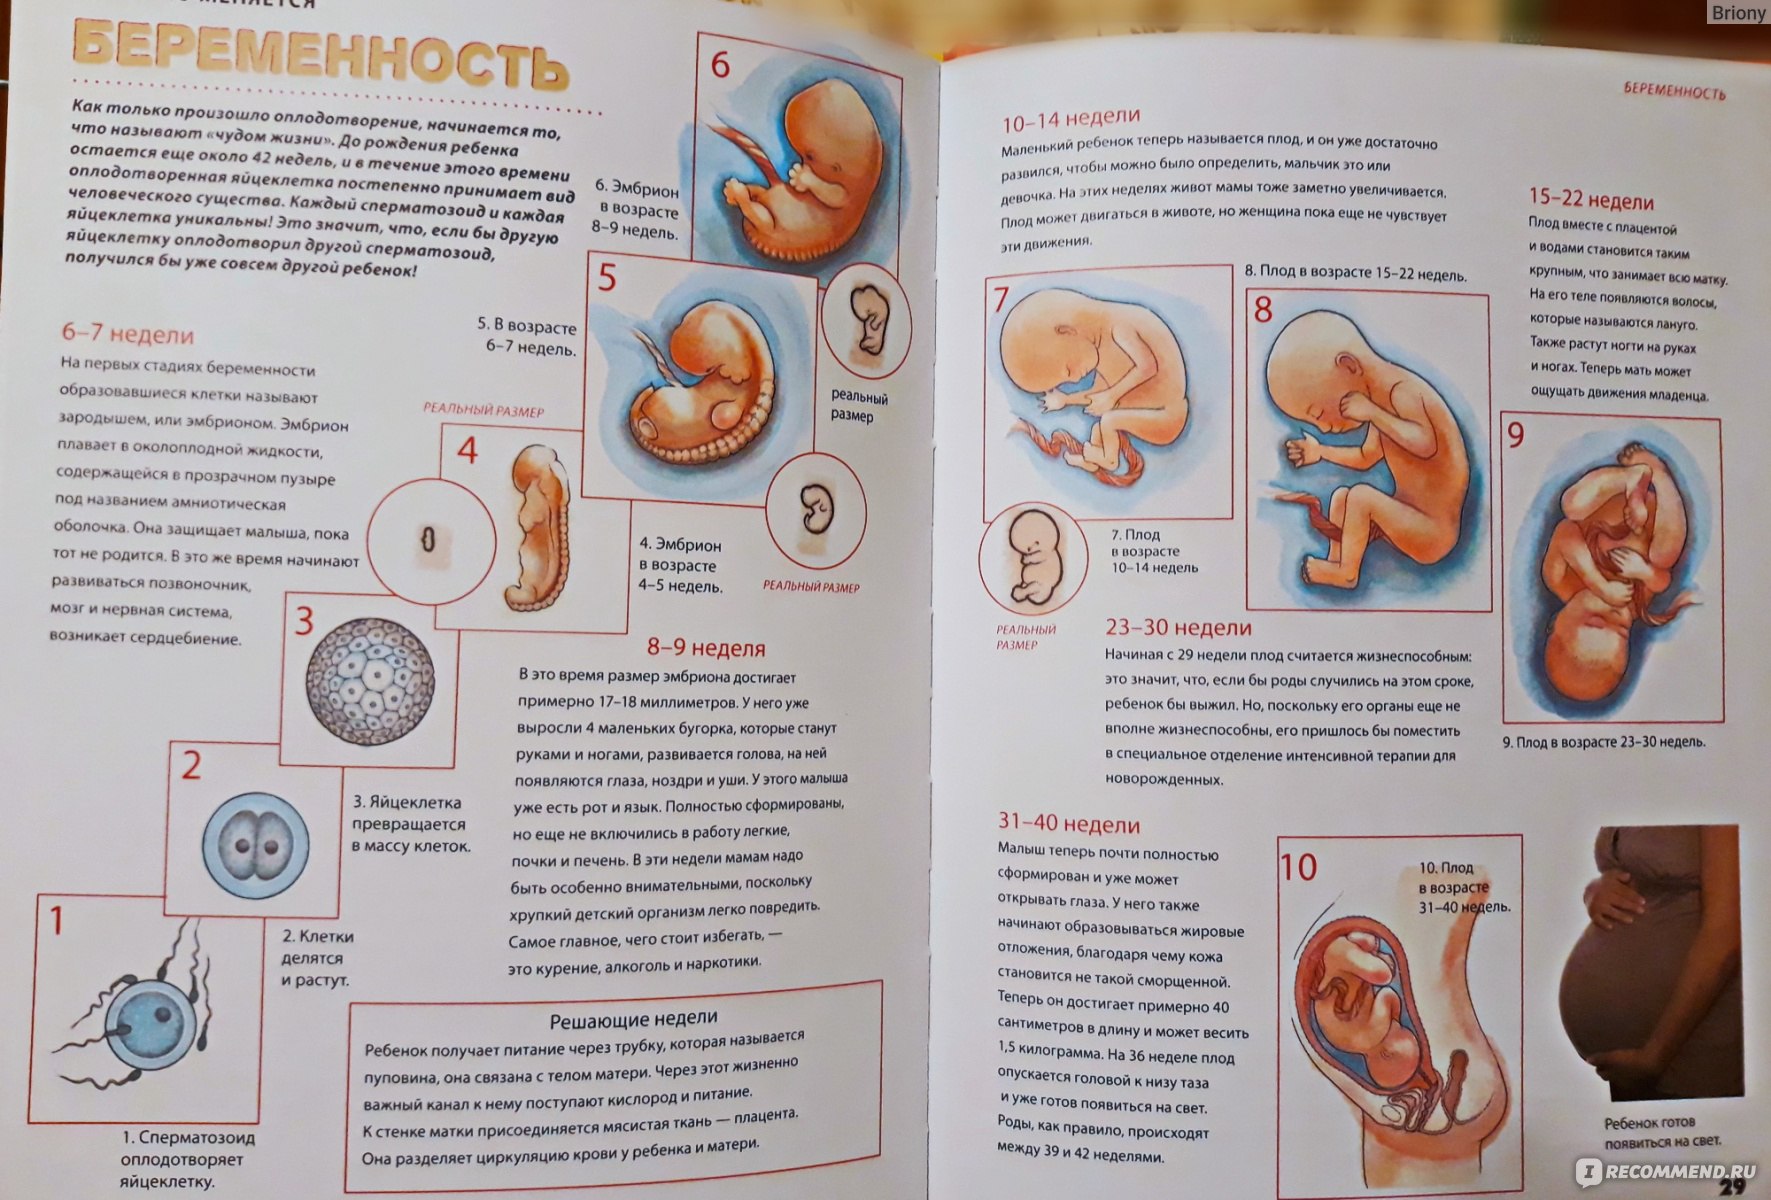 Эмбрион 3-4 недели размер